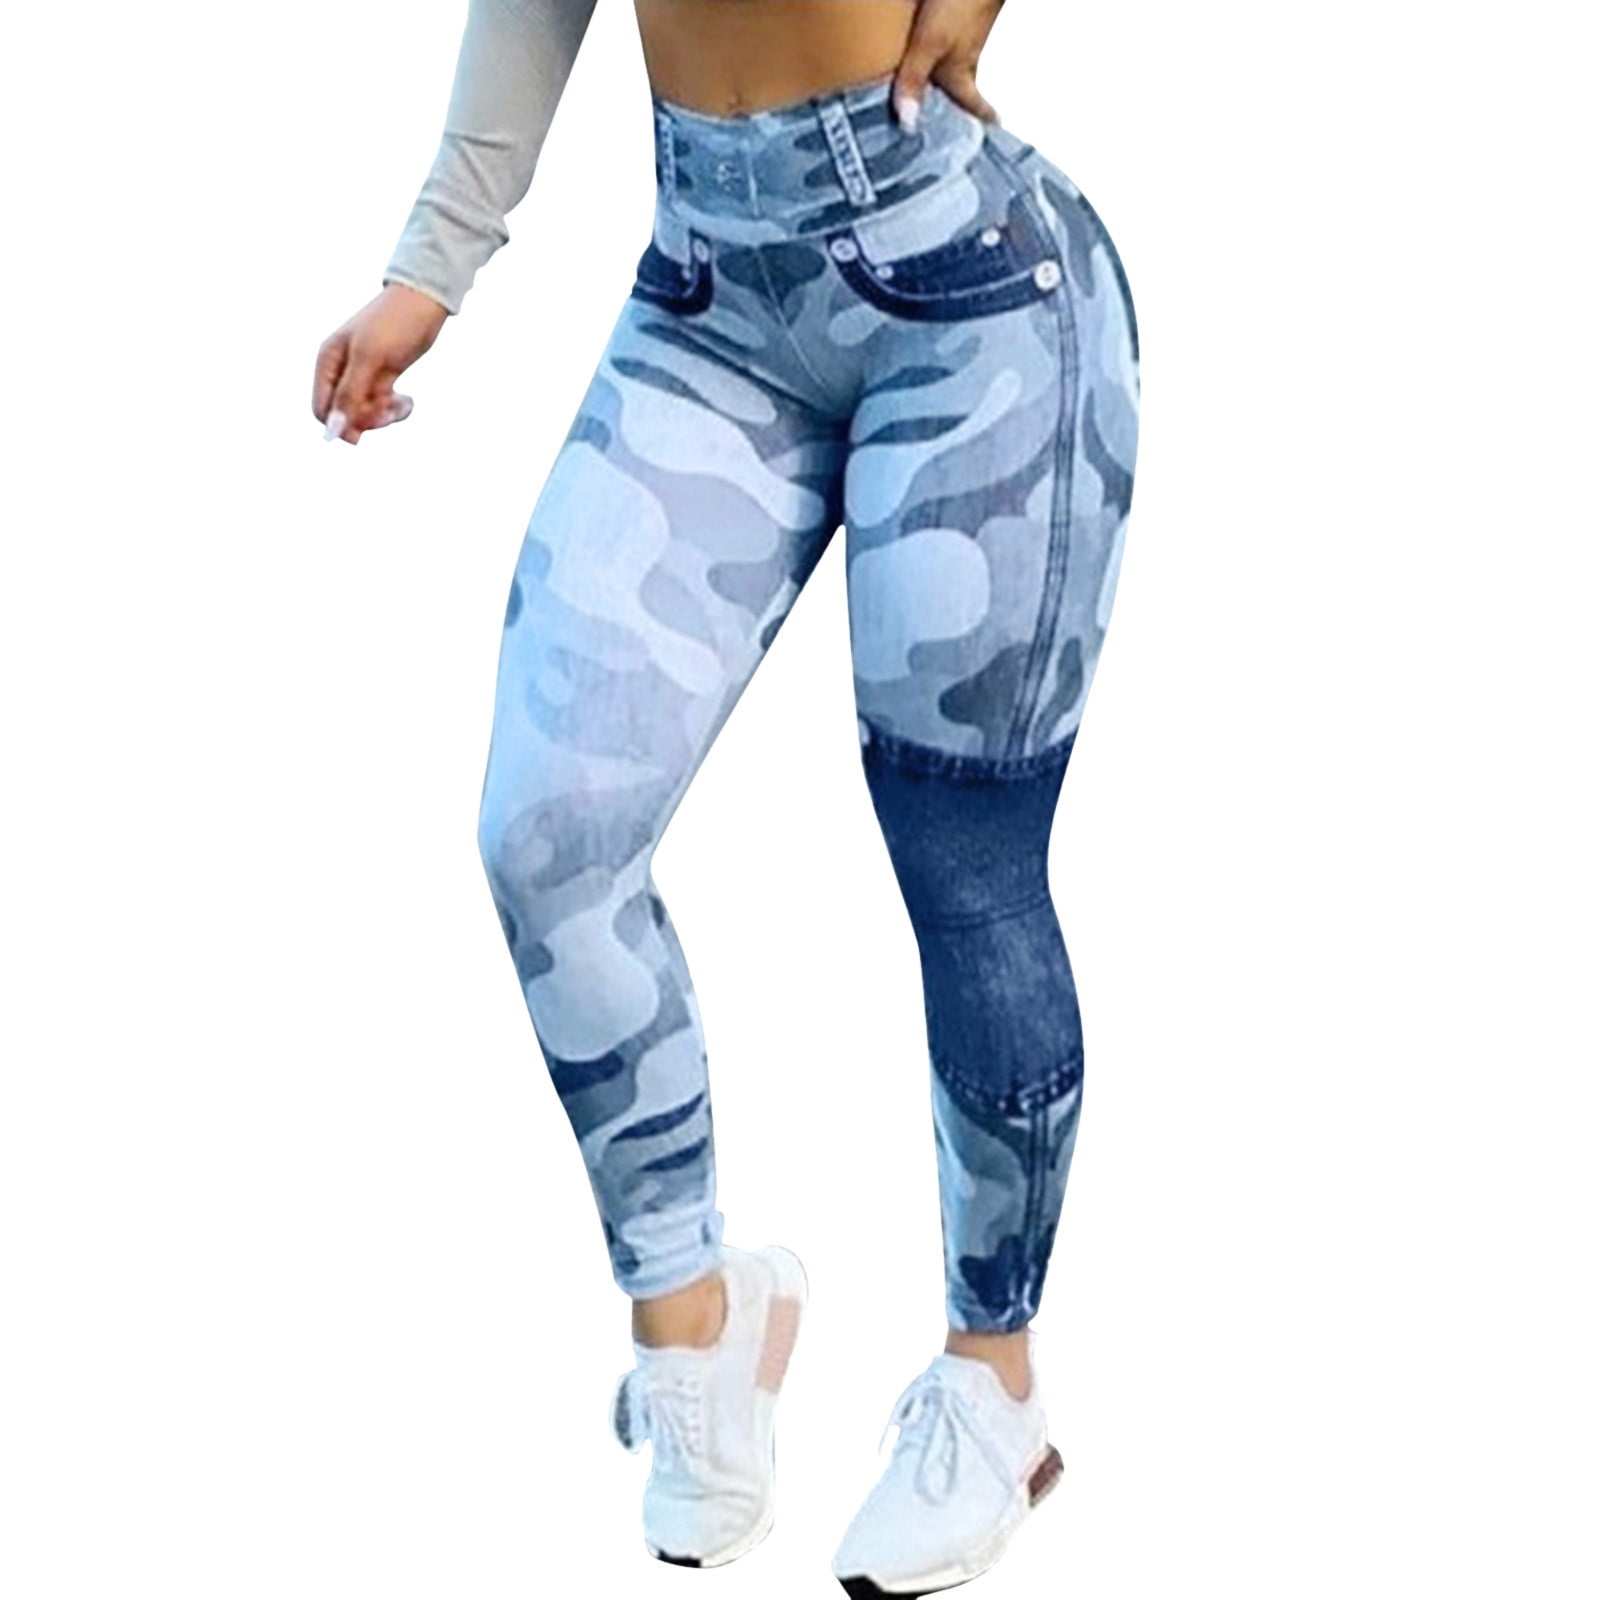 Günstig im Online-Verkauf fvwitlyh 80s Clothes Women Casual Leggings Button High Women Yoga Stitching Waist Fit Slim Shorts Jeans Camouflage